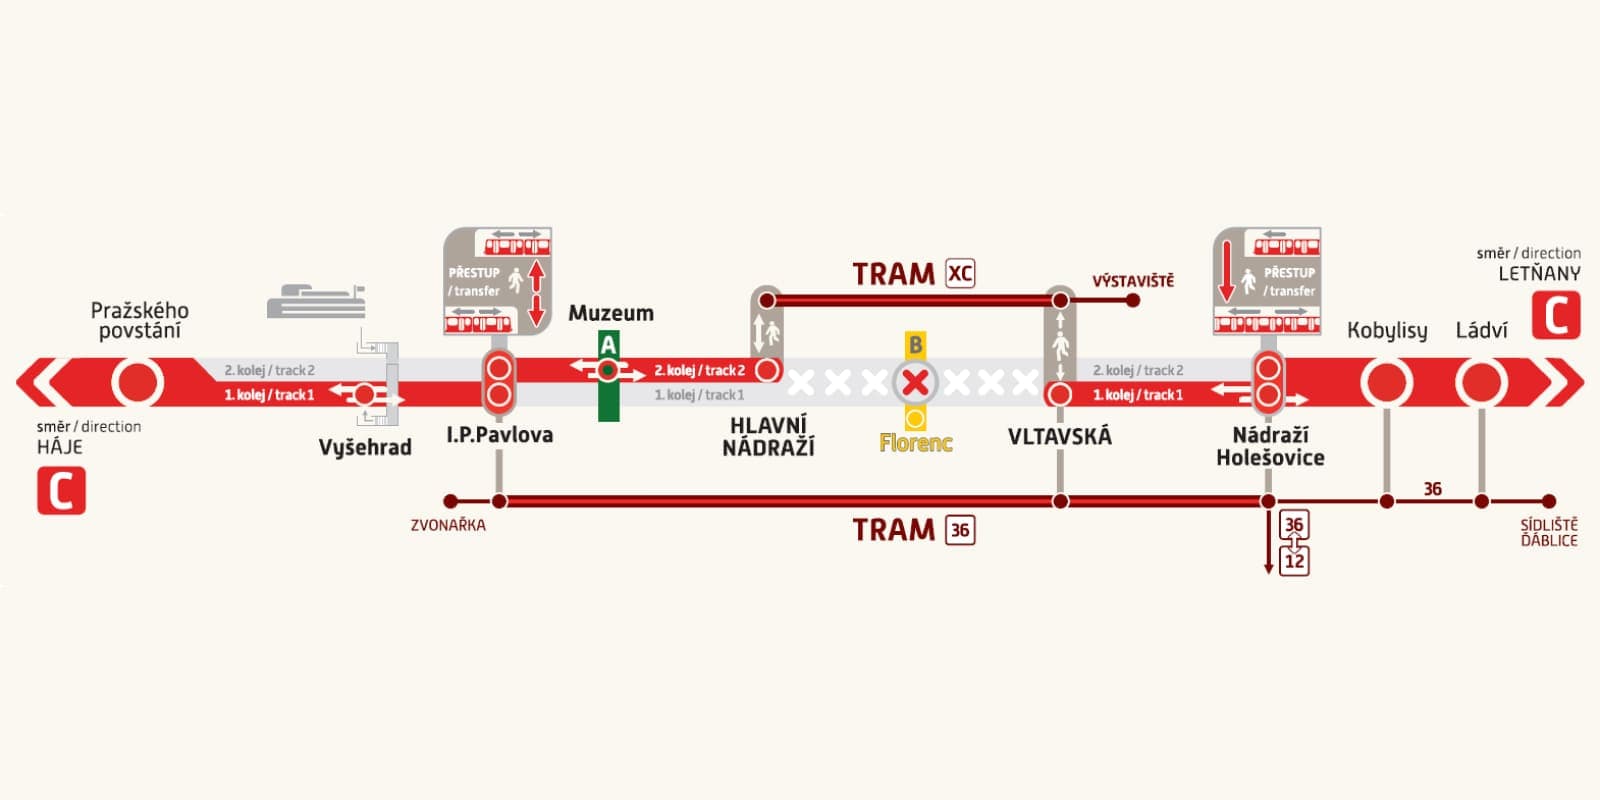 С 30 апреля по 1 мая поезда метро не будут ходить на участке Hlavní nádraží – Vltavská.